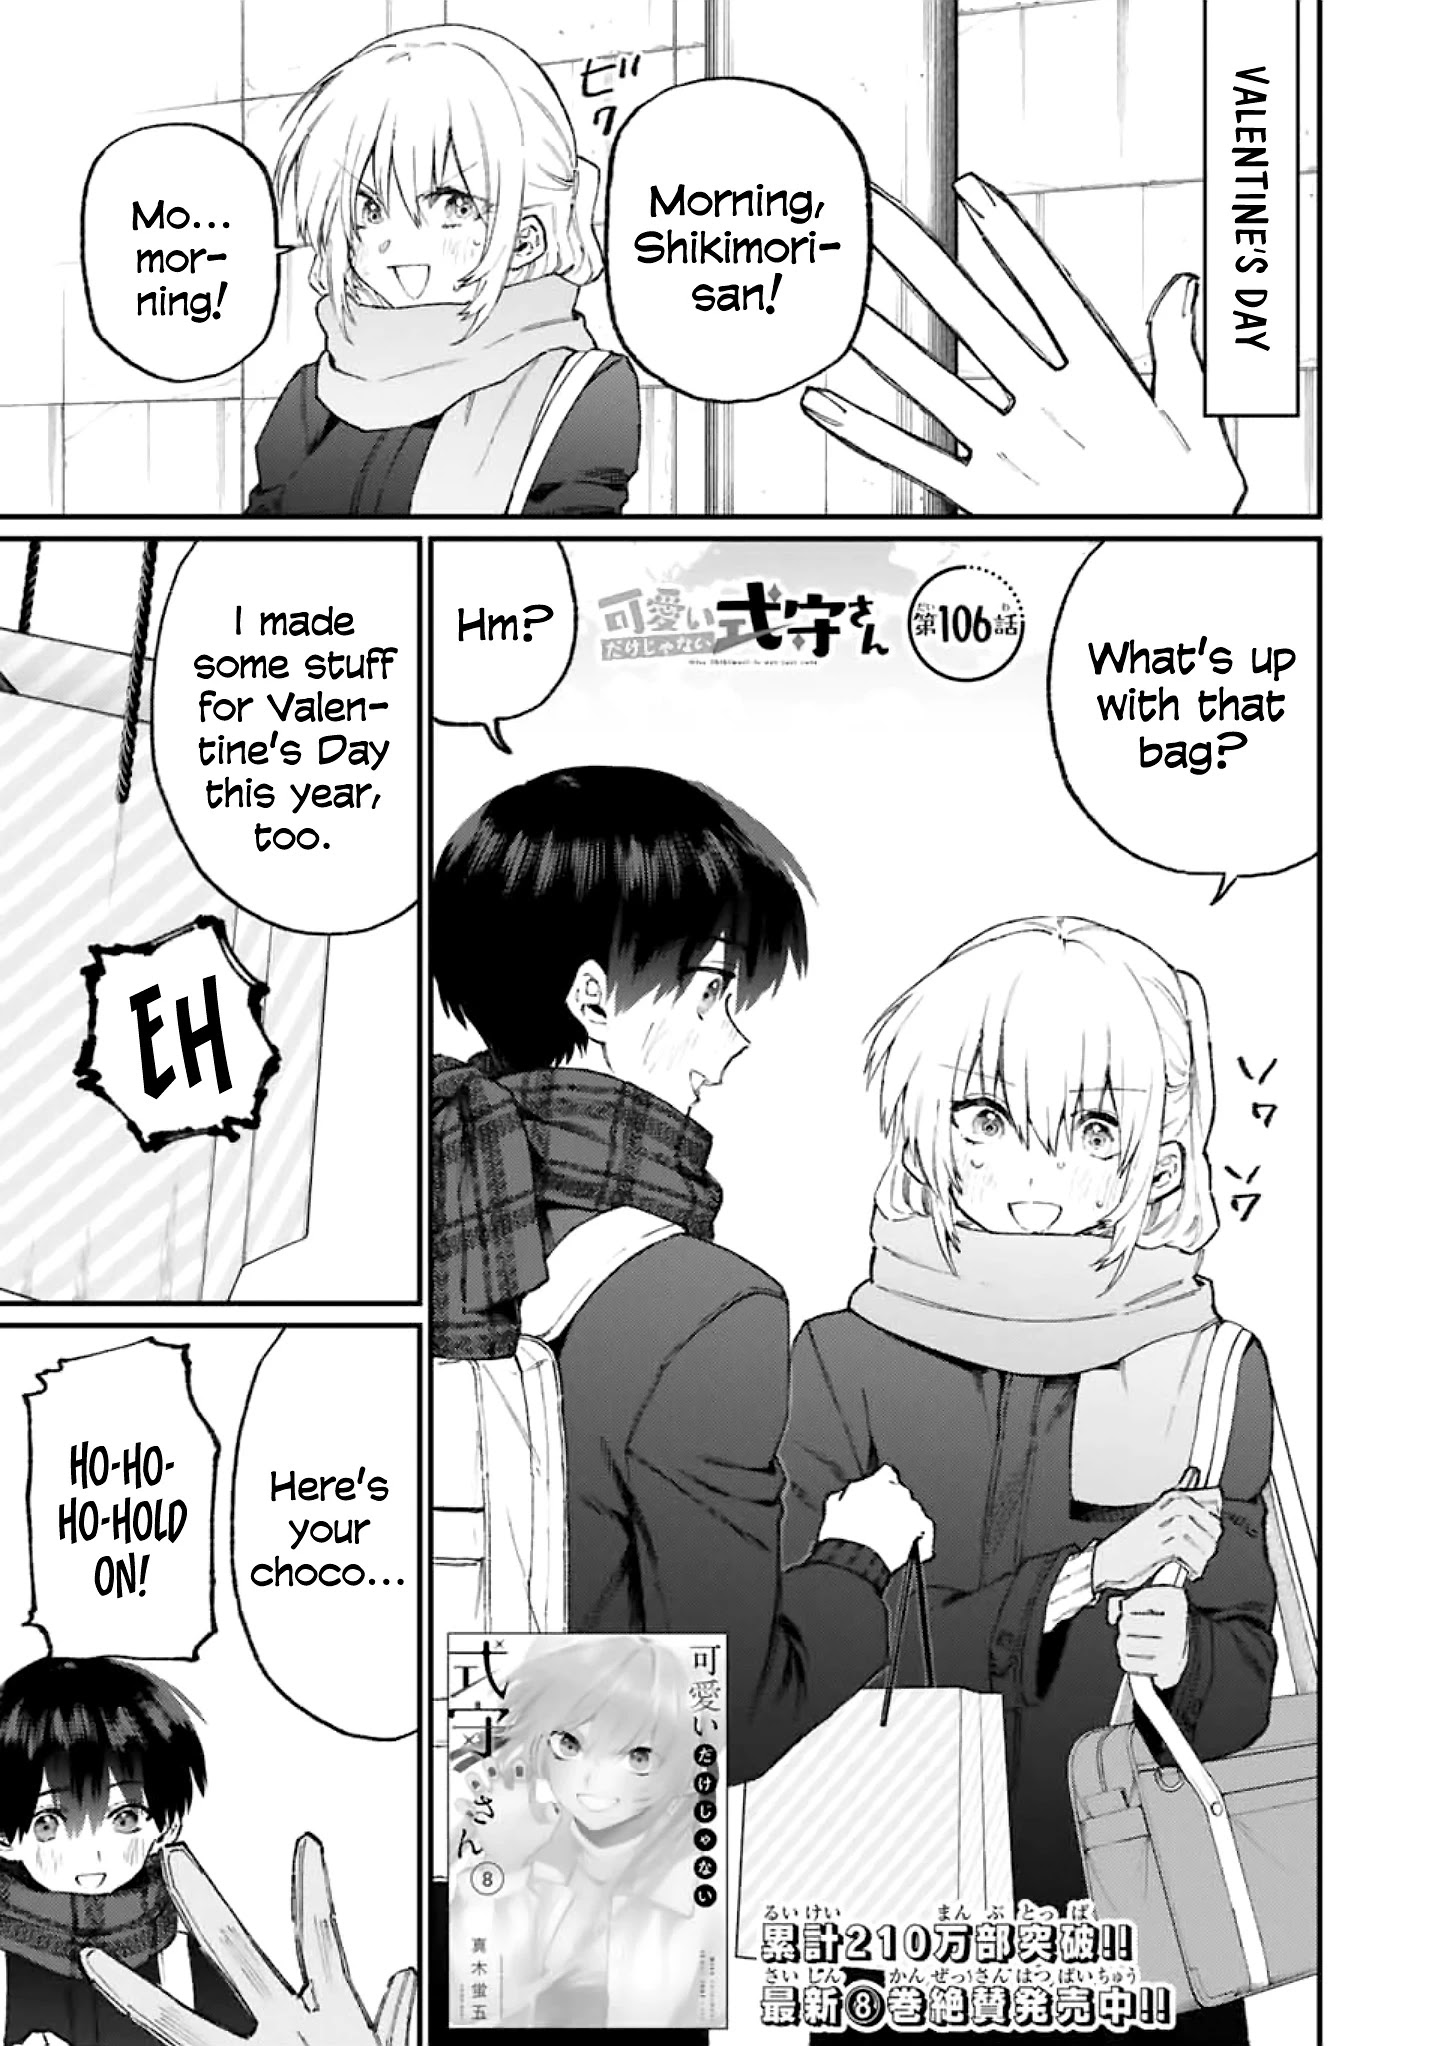 Shikimori's Not Just A Cutie Chapter 106